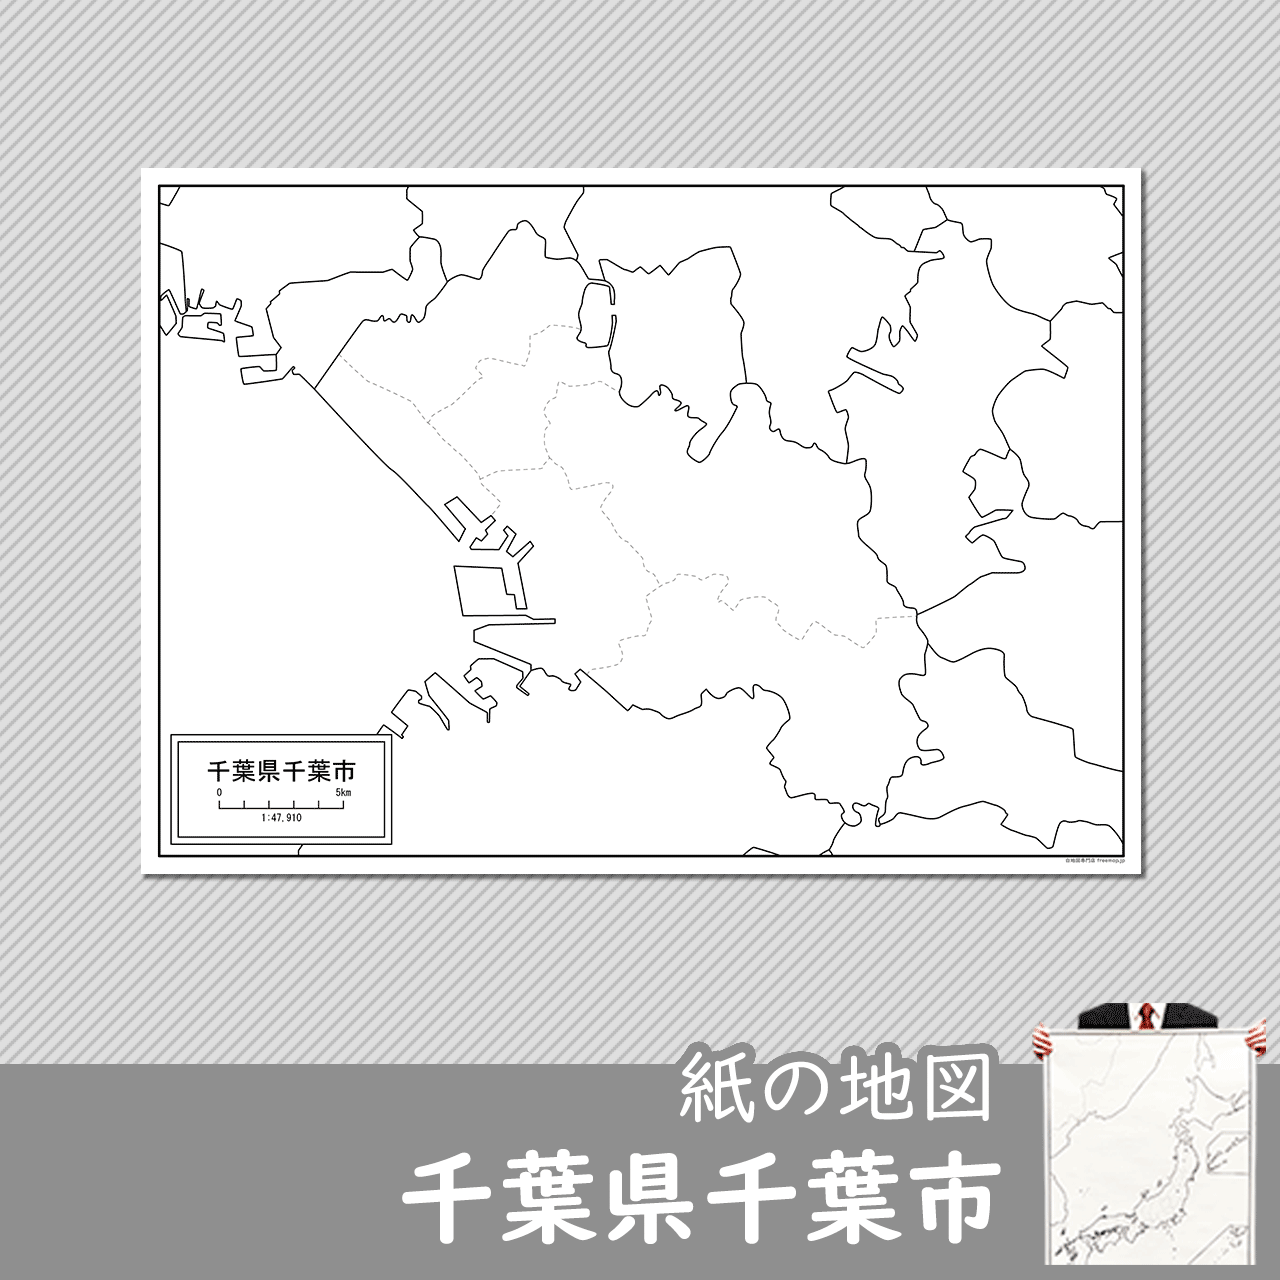 千葉県千葉市の紙の白地図